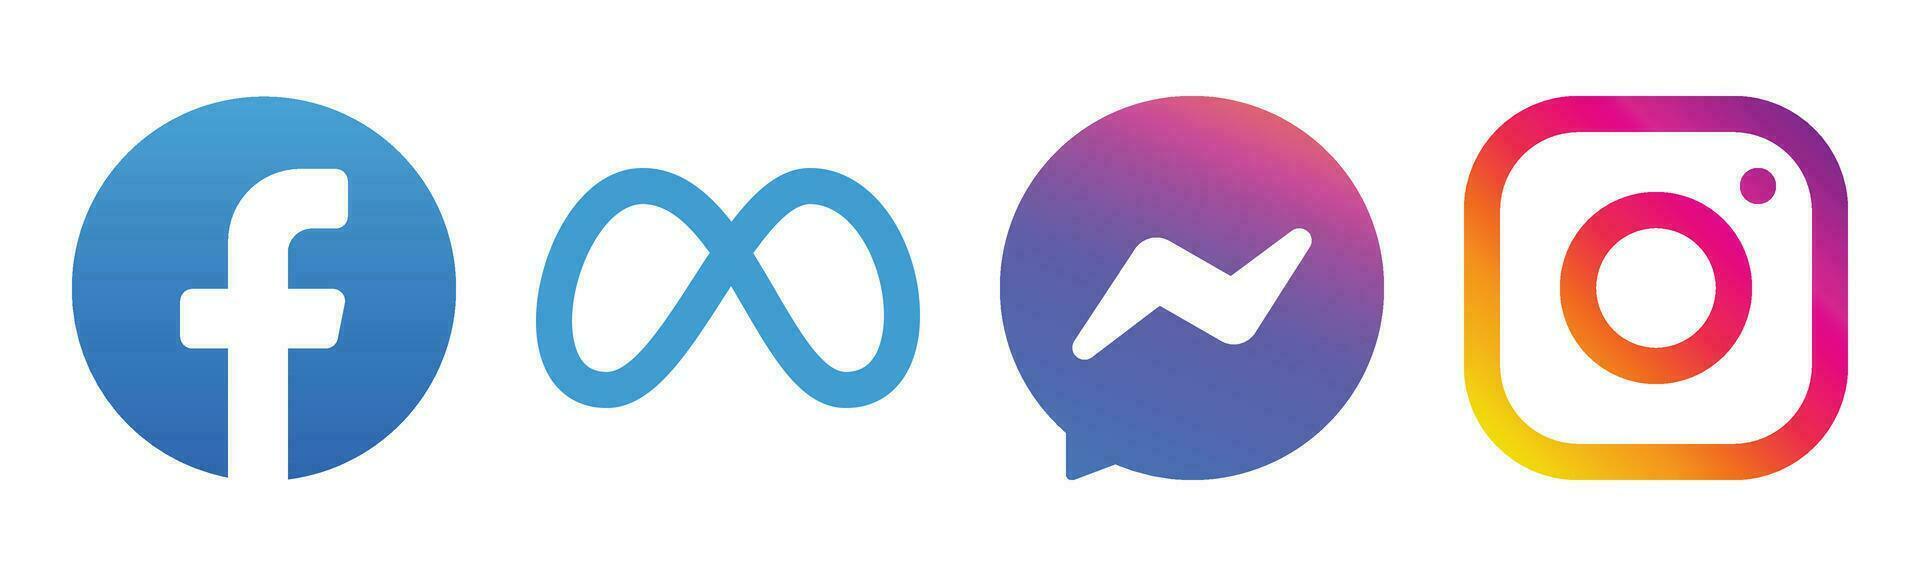 méta social médias logos - Icônes pour Facebook, Instagram, Messager, et plus vecteur